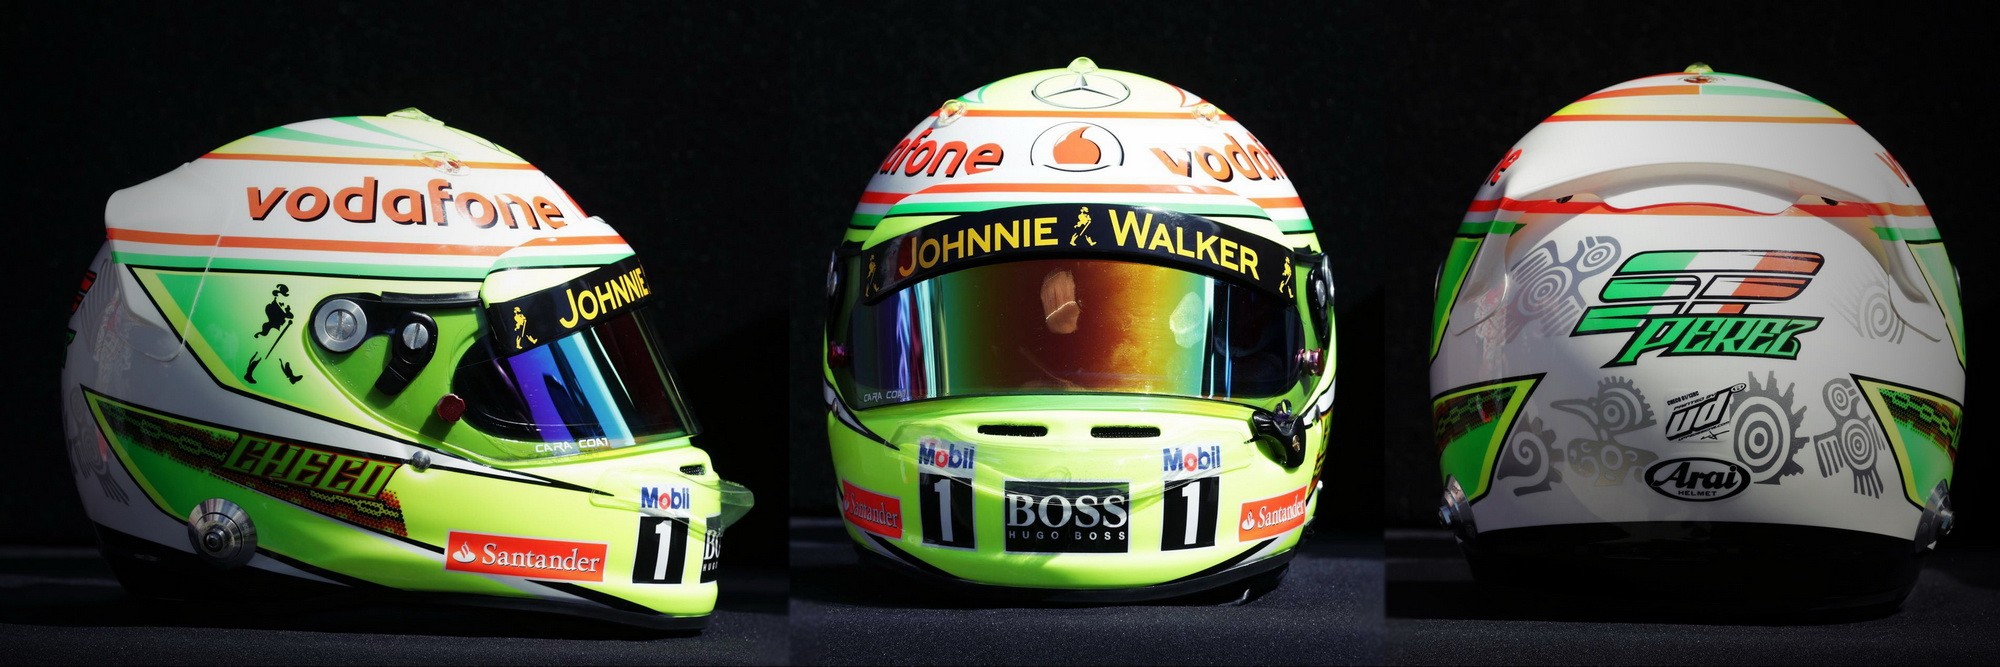 Шлем Серхио Переса на сезон 2013 года | 2013 helmet of Sergio Perez